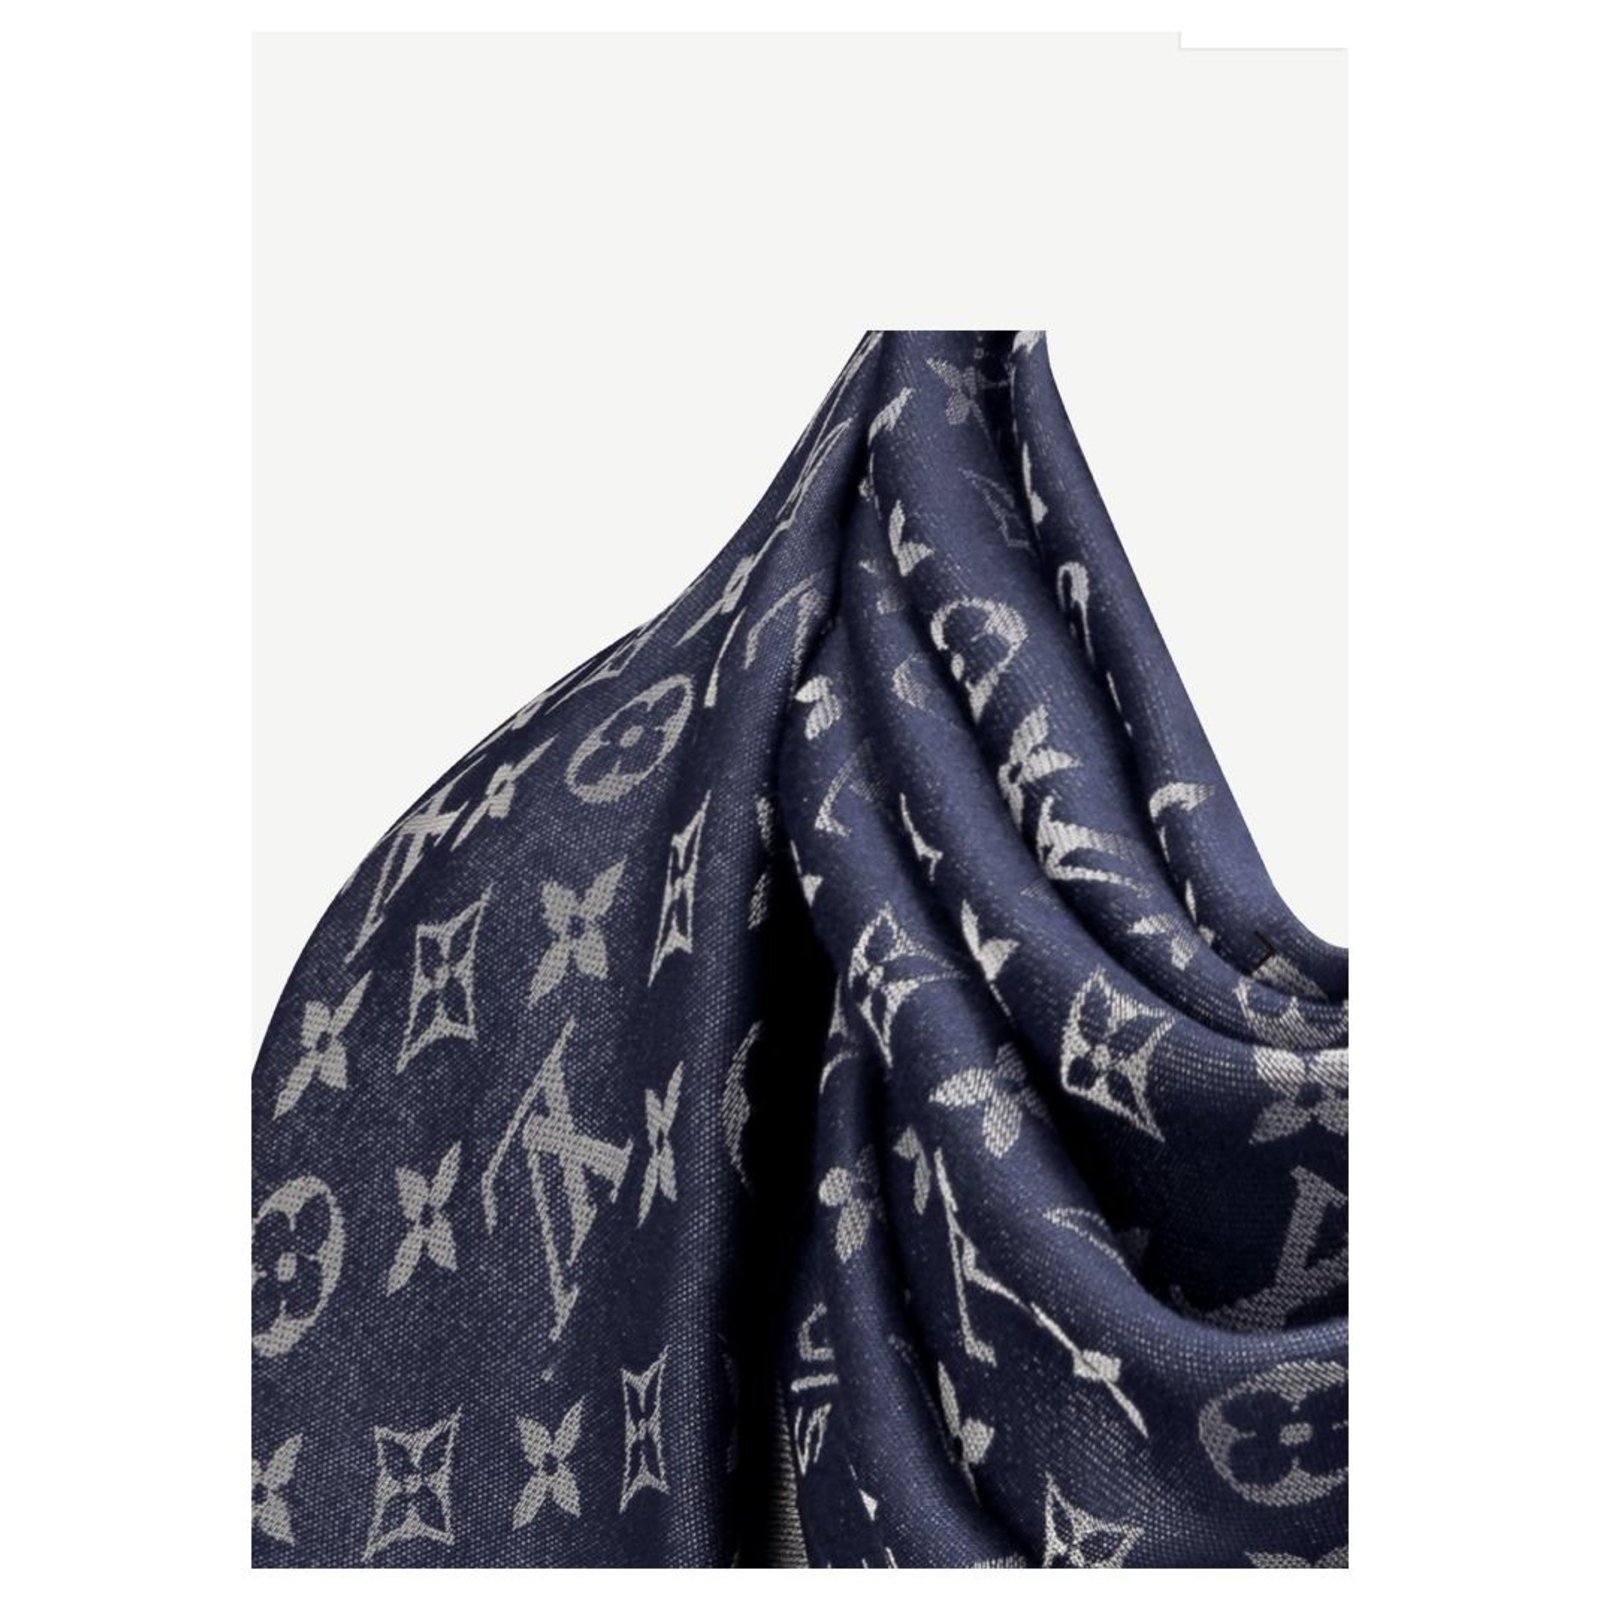 Louis Vuitton scialle Monogram Shine Blu notte Nuovo M73658